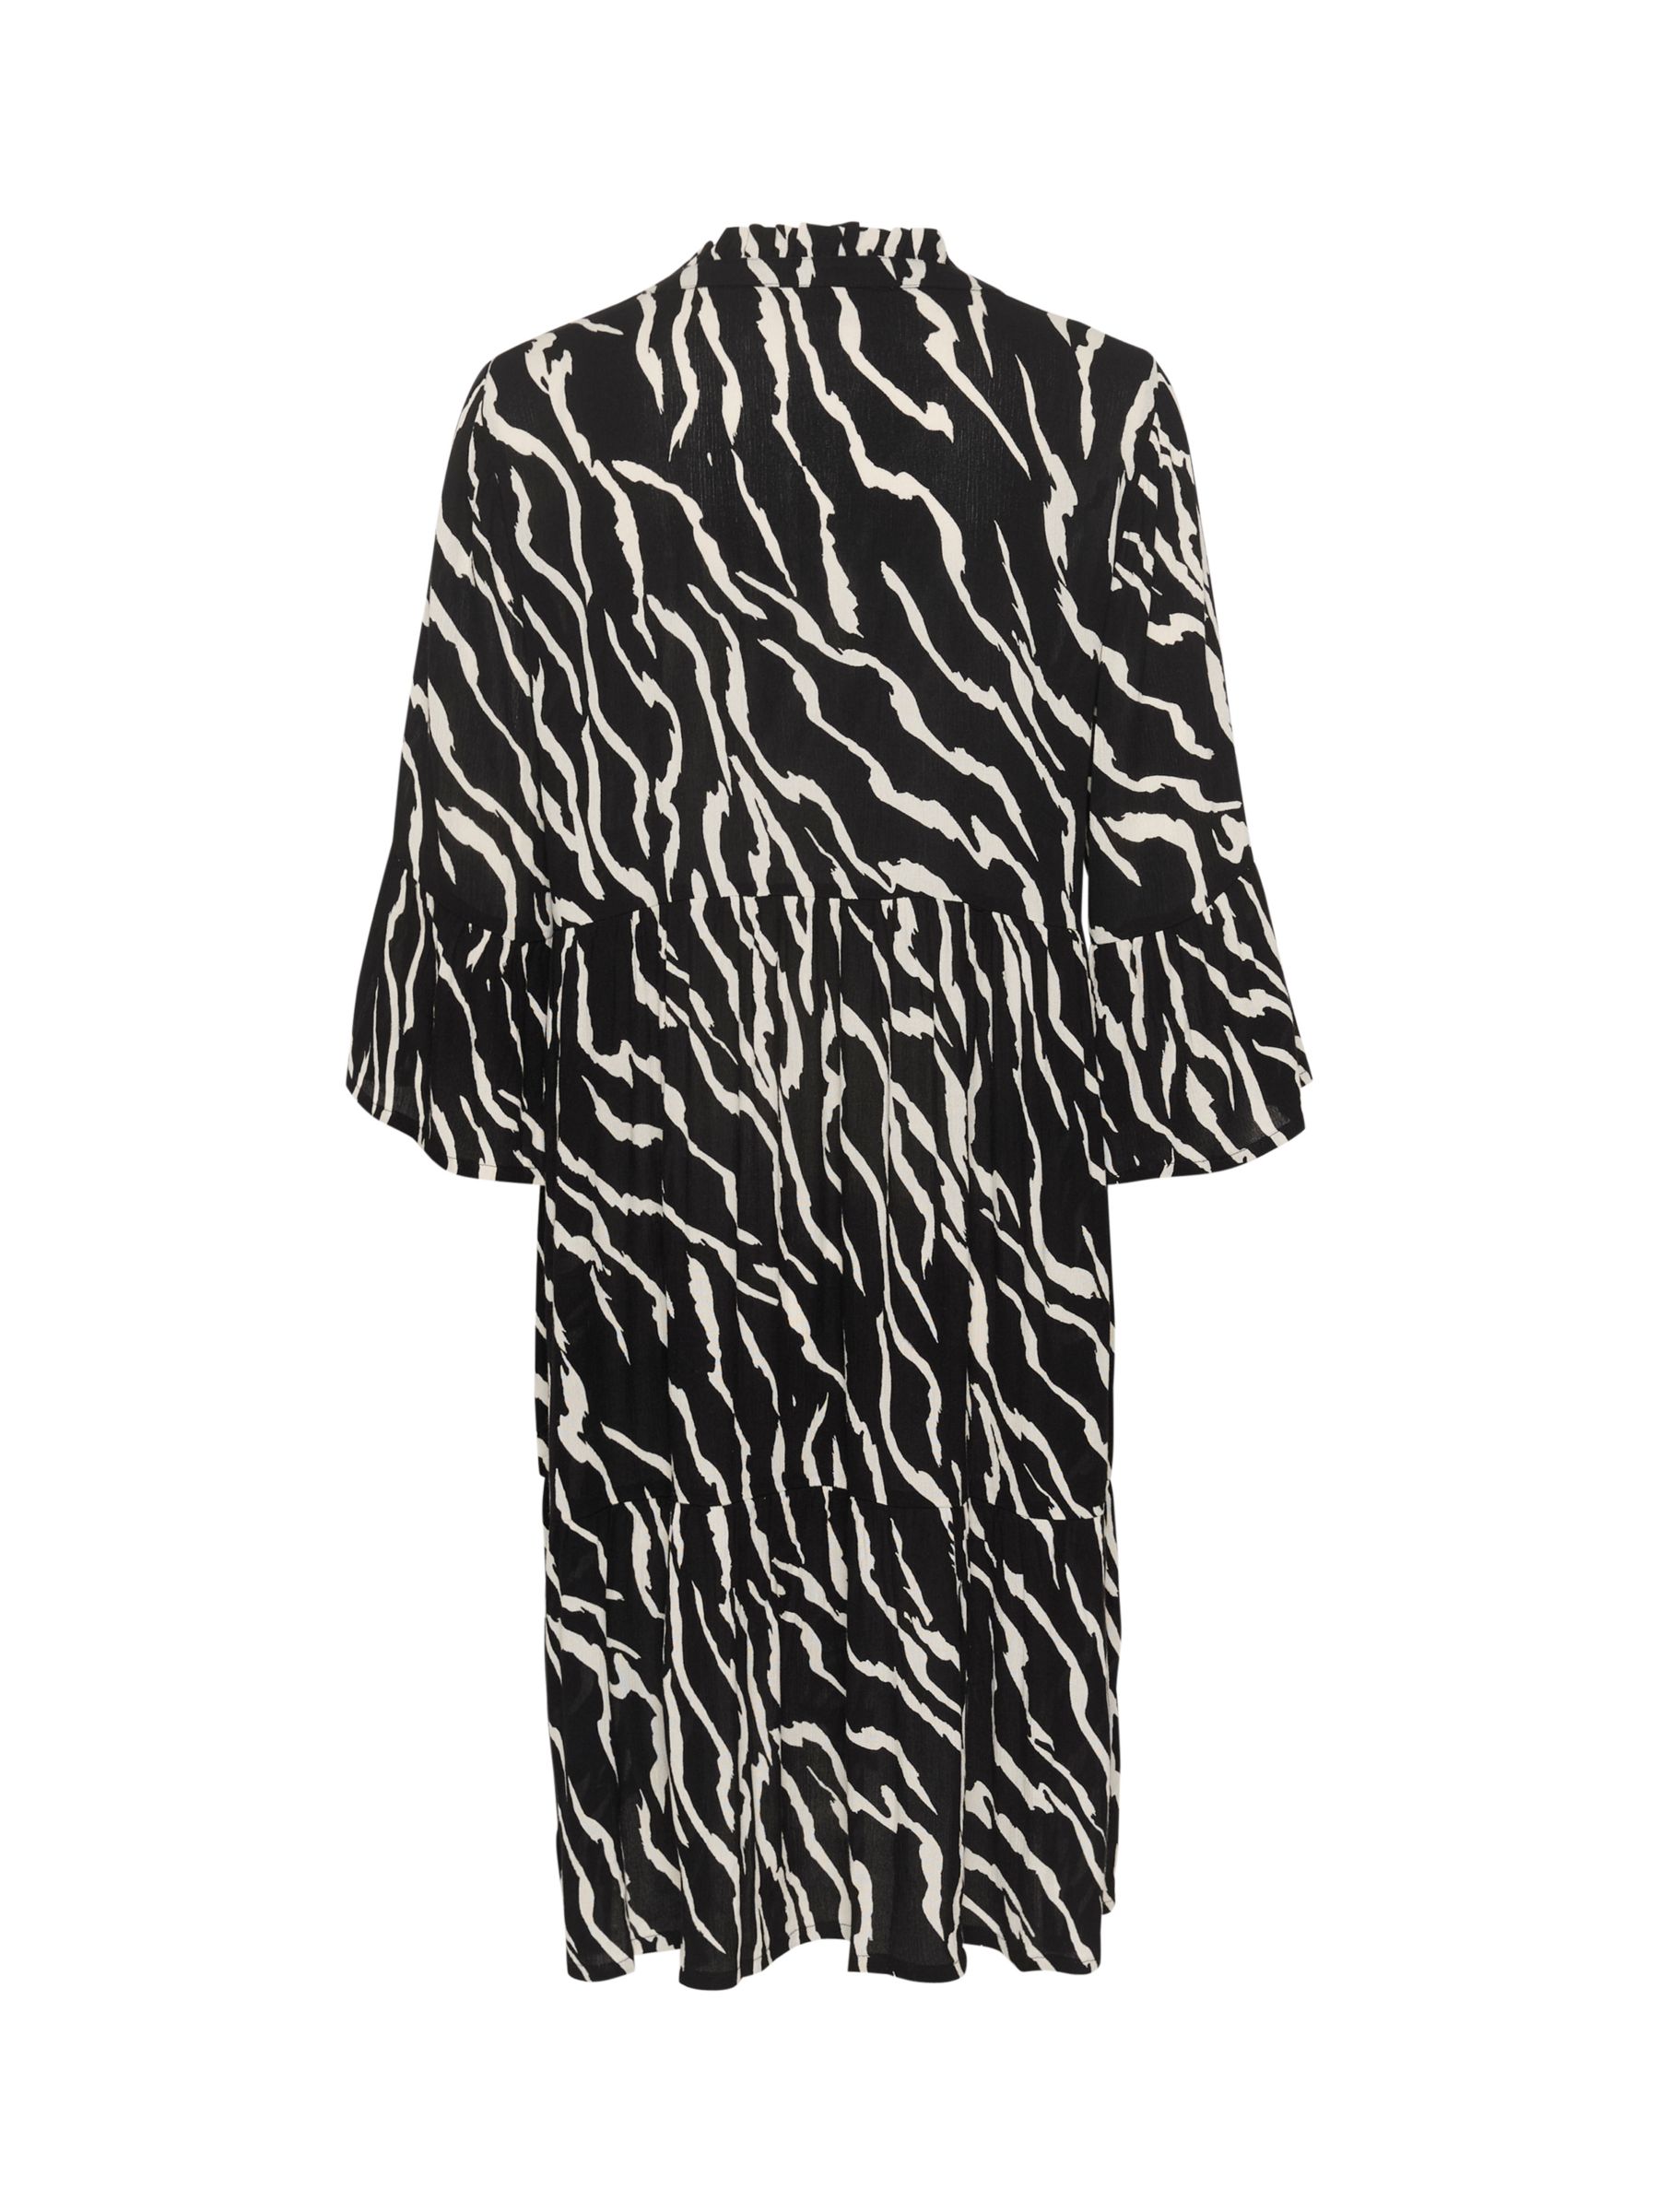 Buy KAFFE Hera Ecovero V-Neck Knee Length Dress, Antique Zebra Online at johnlewis.com